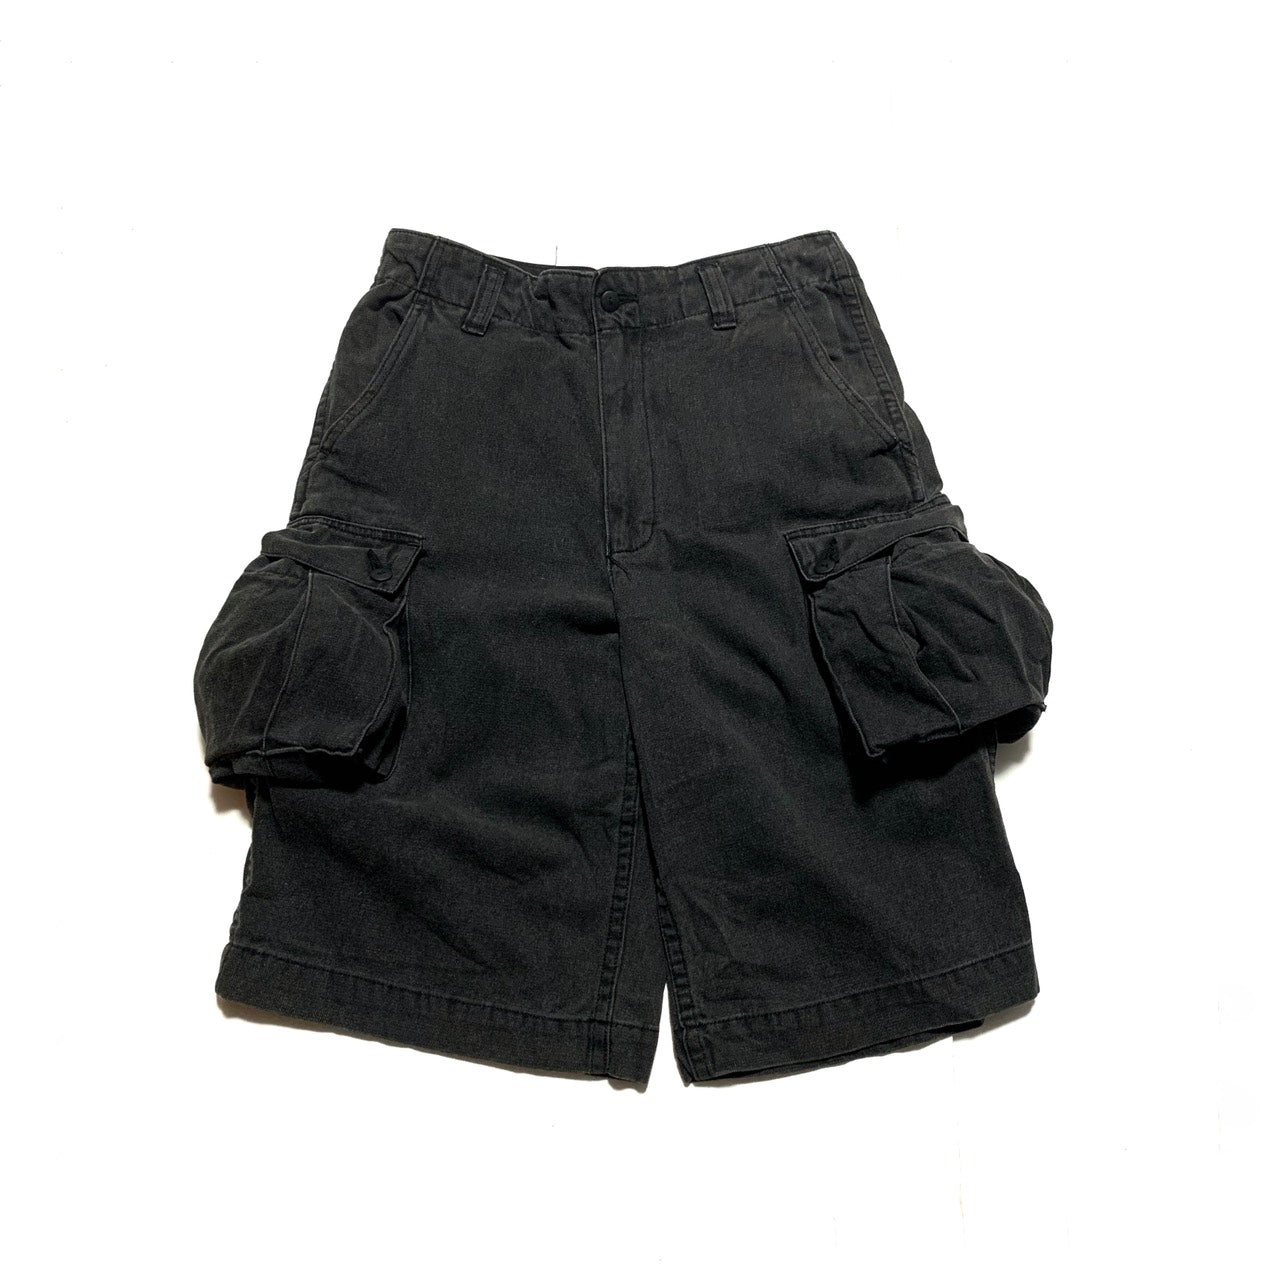 1980s Pocket Design Shorts